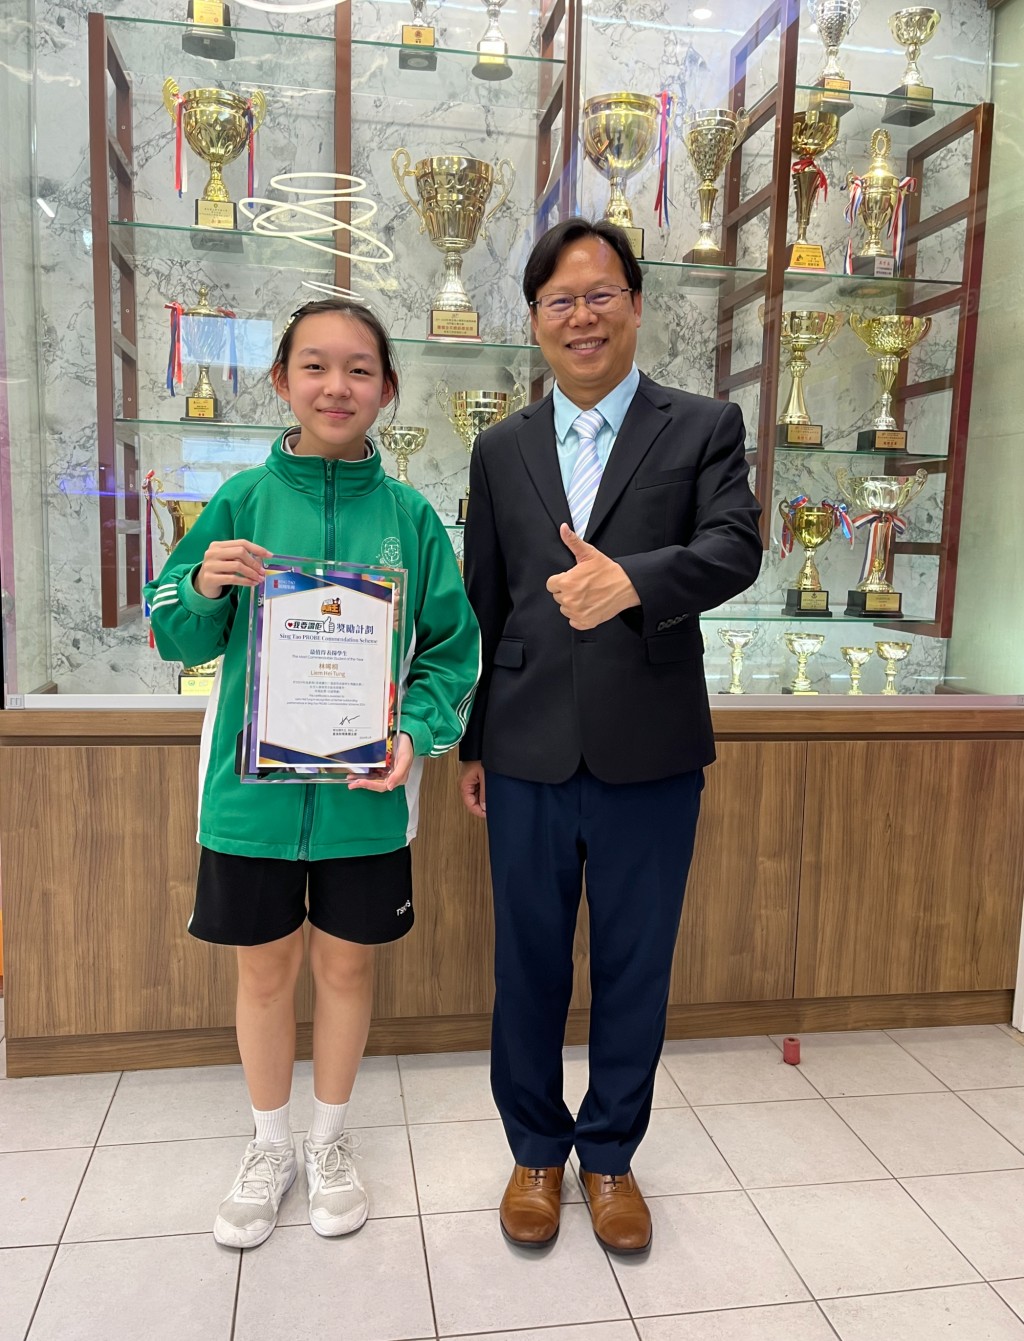 東華三院鄧肇堅小學另一位得獎同學為林晞桐。